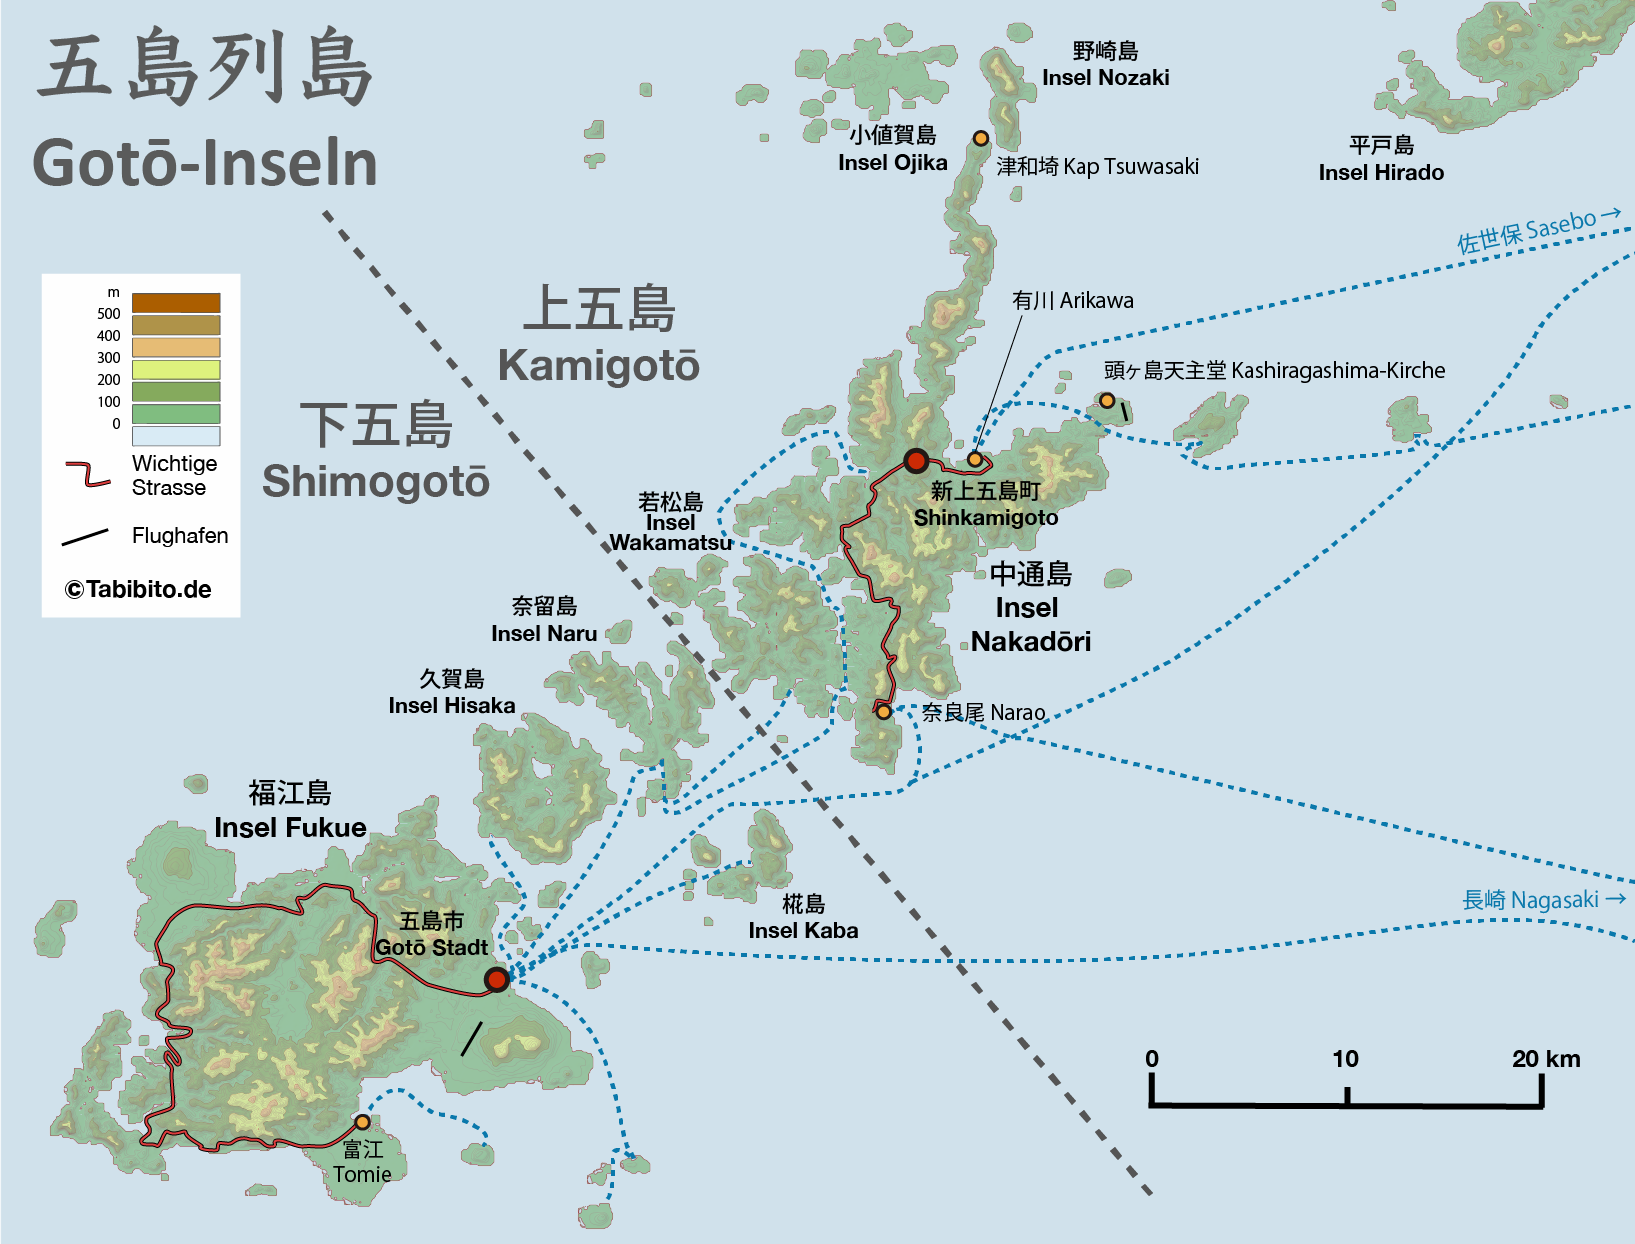 Goto-Inseln westlich von Kyushu